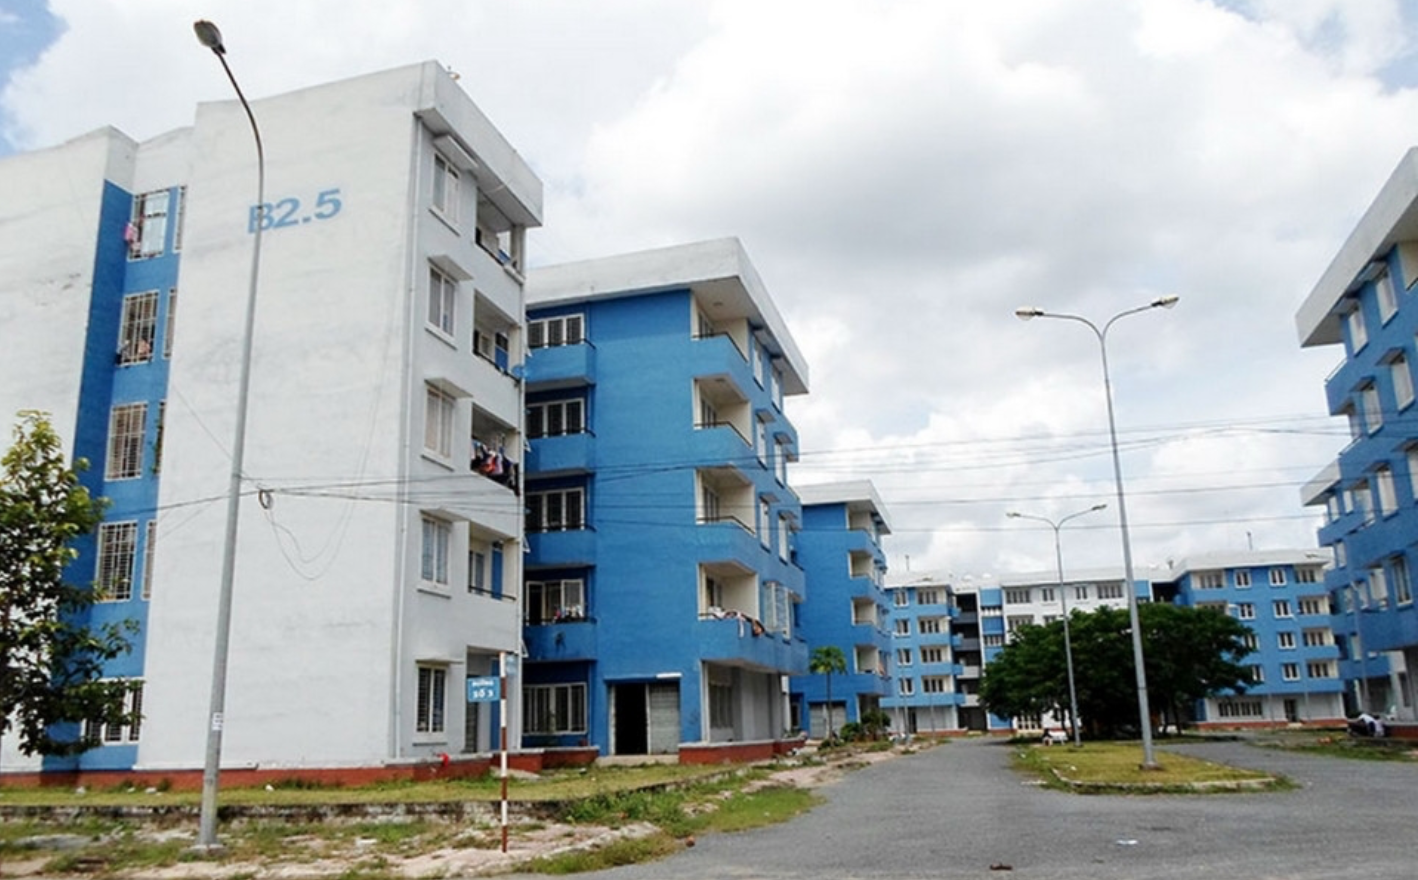 Khu tái định cư Vĩnh Lộc B (huyện Bình Chánh) có quy mô 2.240 căn hộ, nhưng mới có khoảng vài trăm hộ đến sinh sống sau 9 năm đi vào sử dụng. Ảnh PT.